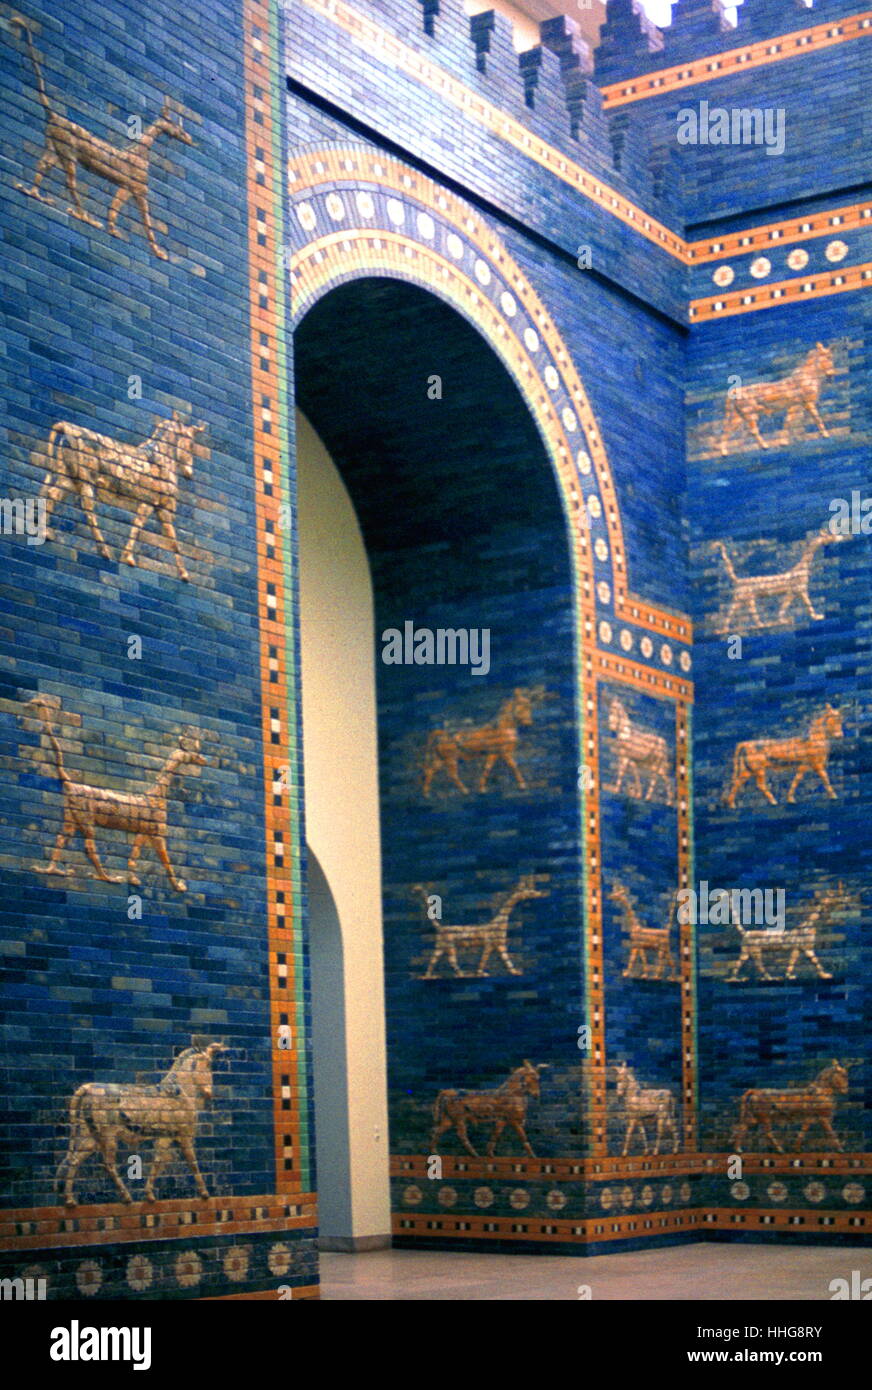 La ricostruzione della Ishtar Gate; l'ottavo gate all'interno della città di Babilonia. Esso è stato costruito in circa 575 a.c. per ordine del re Nabucodonosor II sul lato nord della città. Esso è stato scavato nei primi anni del XX secolo e una ricostruzione utilizzando mattoni originale è ora mostrata nel Pergamon Museum di Berlino. Foto Stock